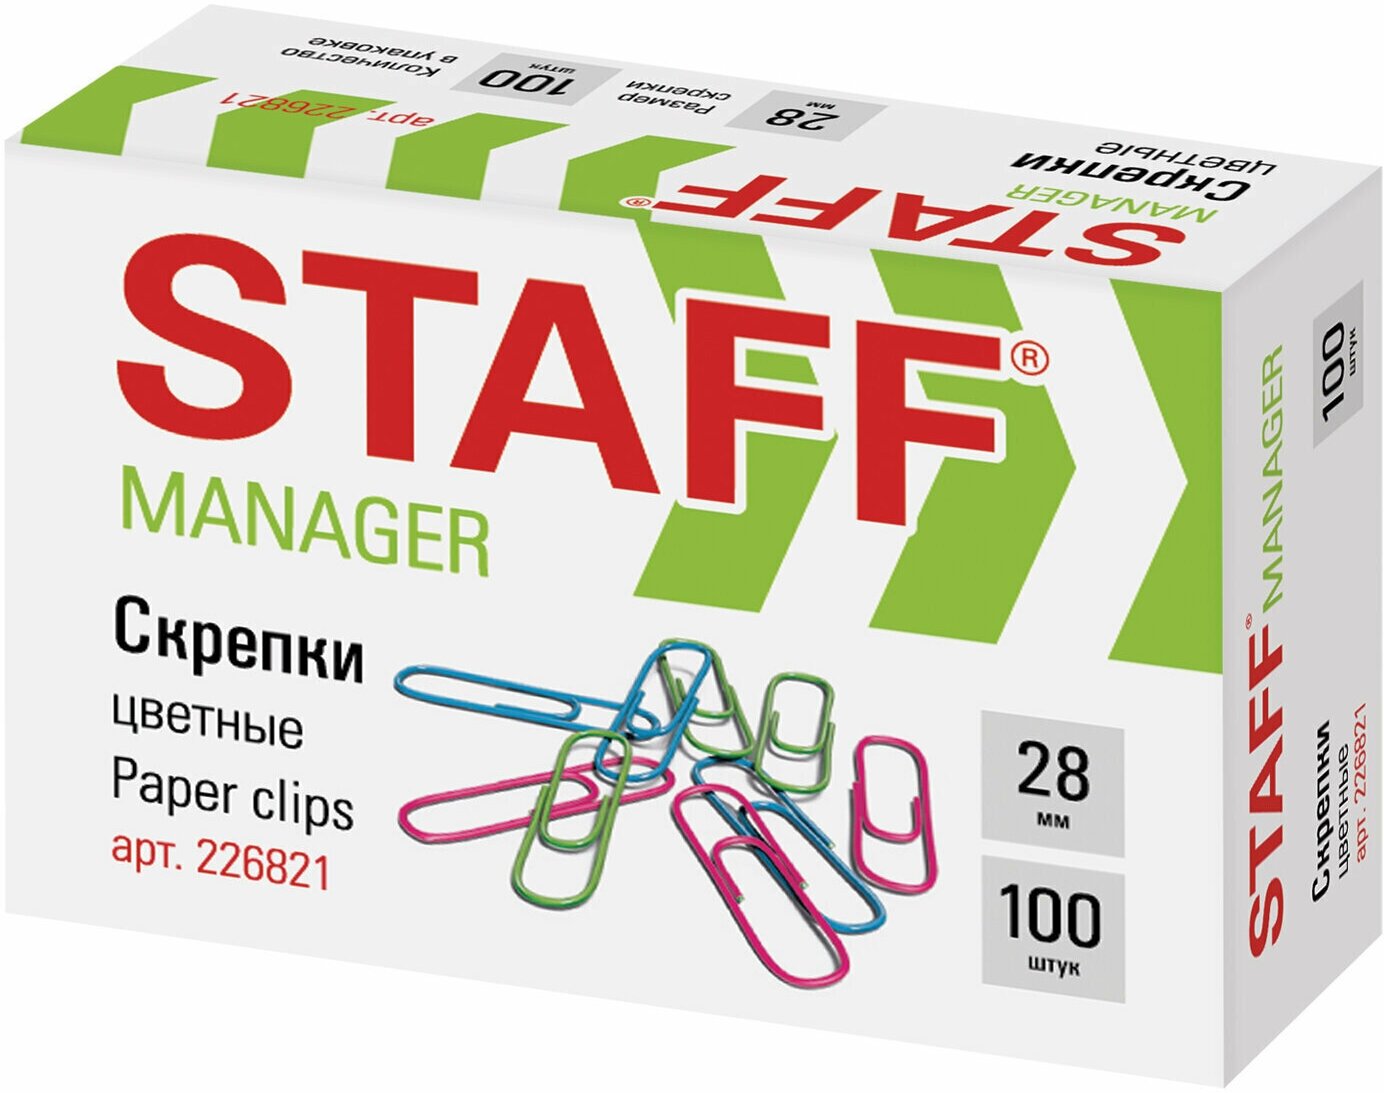 Скрепки 28мм Staff "Manager", 100шт, цветные